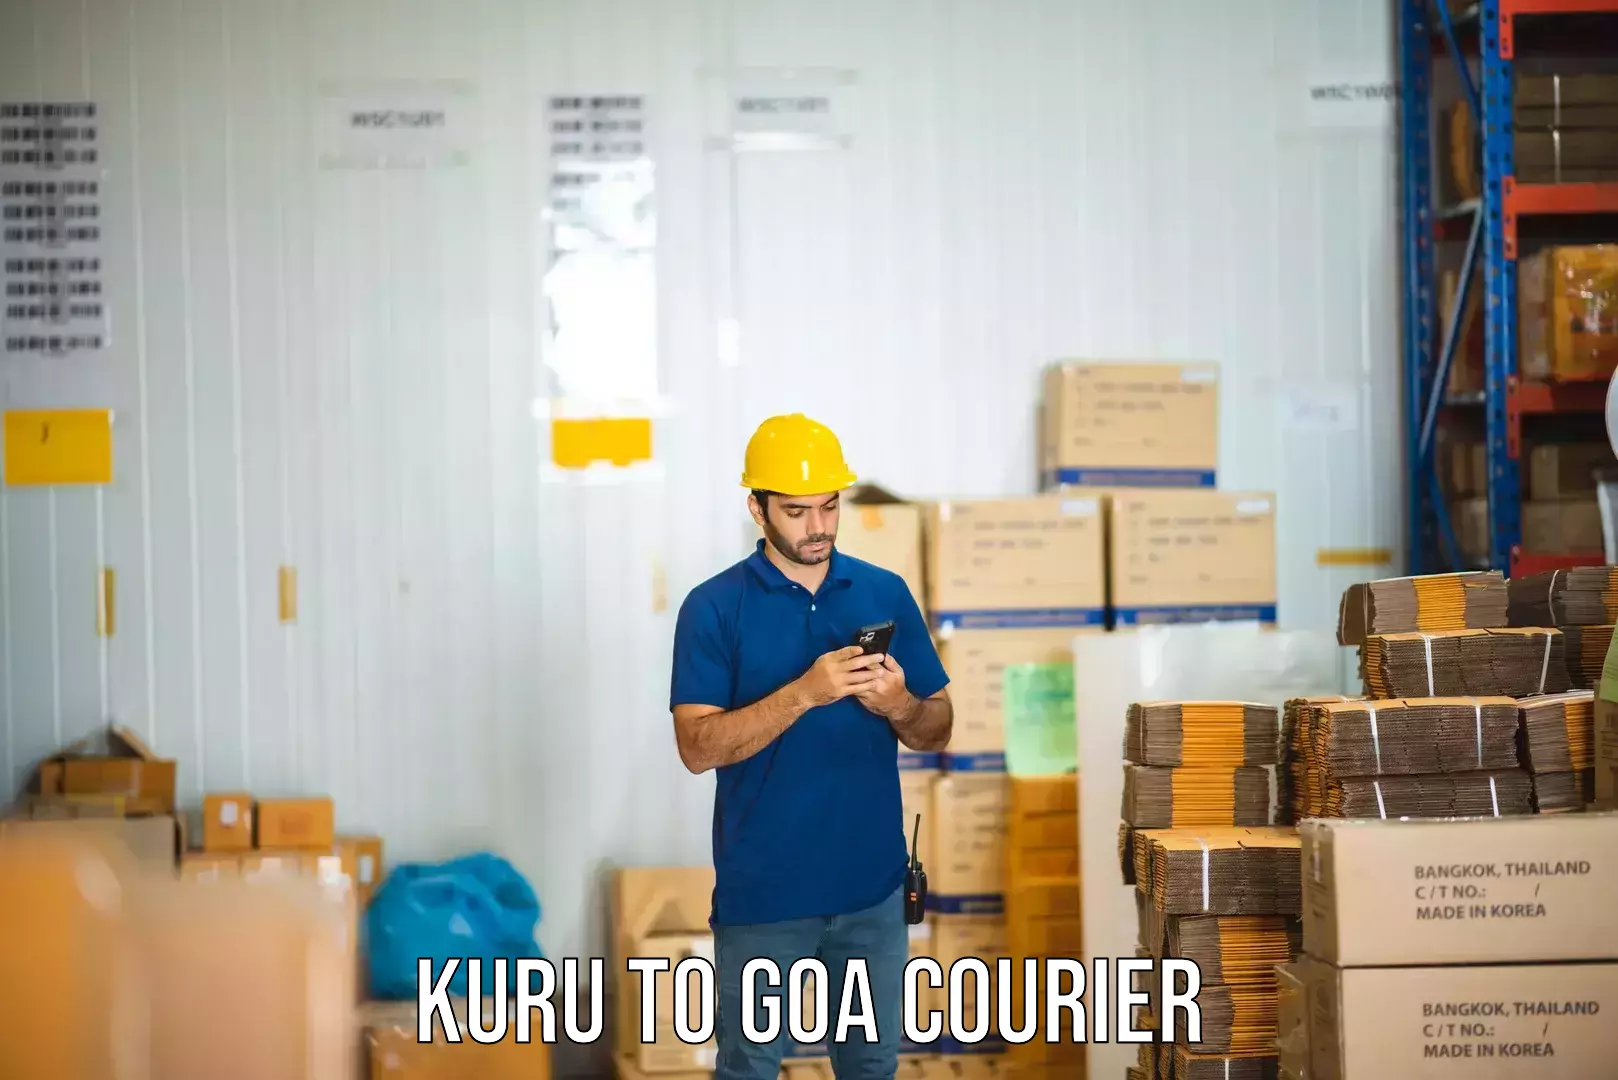 Enhanced tracking features Kuru to Goa